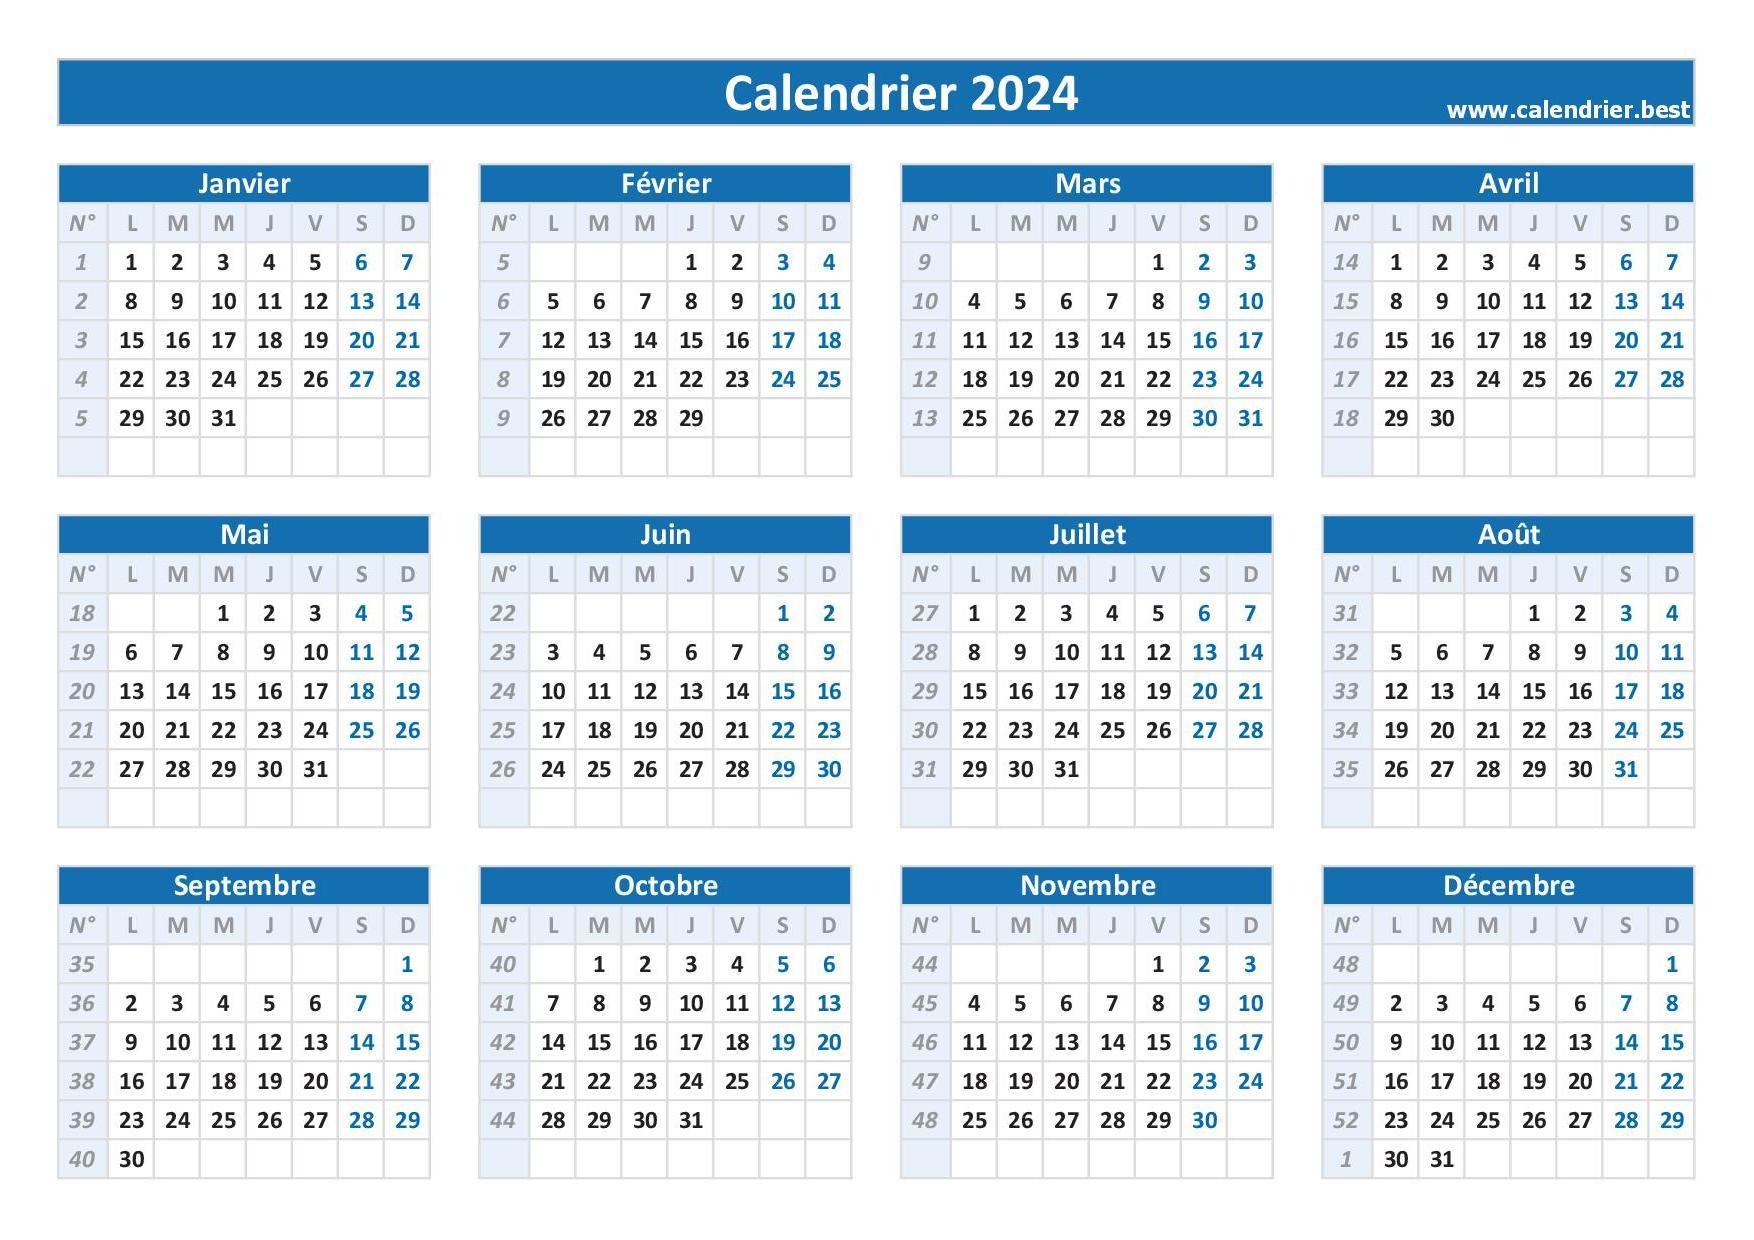 Numéro de semaine 2024 : liste, dates et calendrier 2024 avec semaine